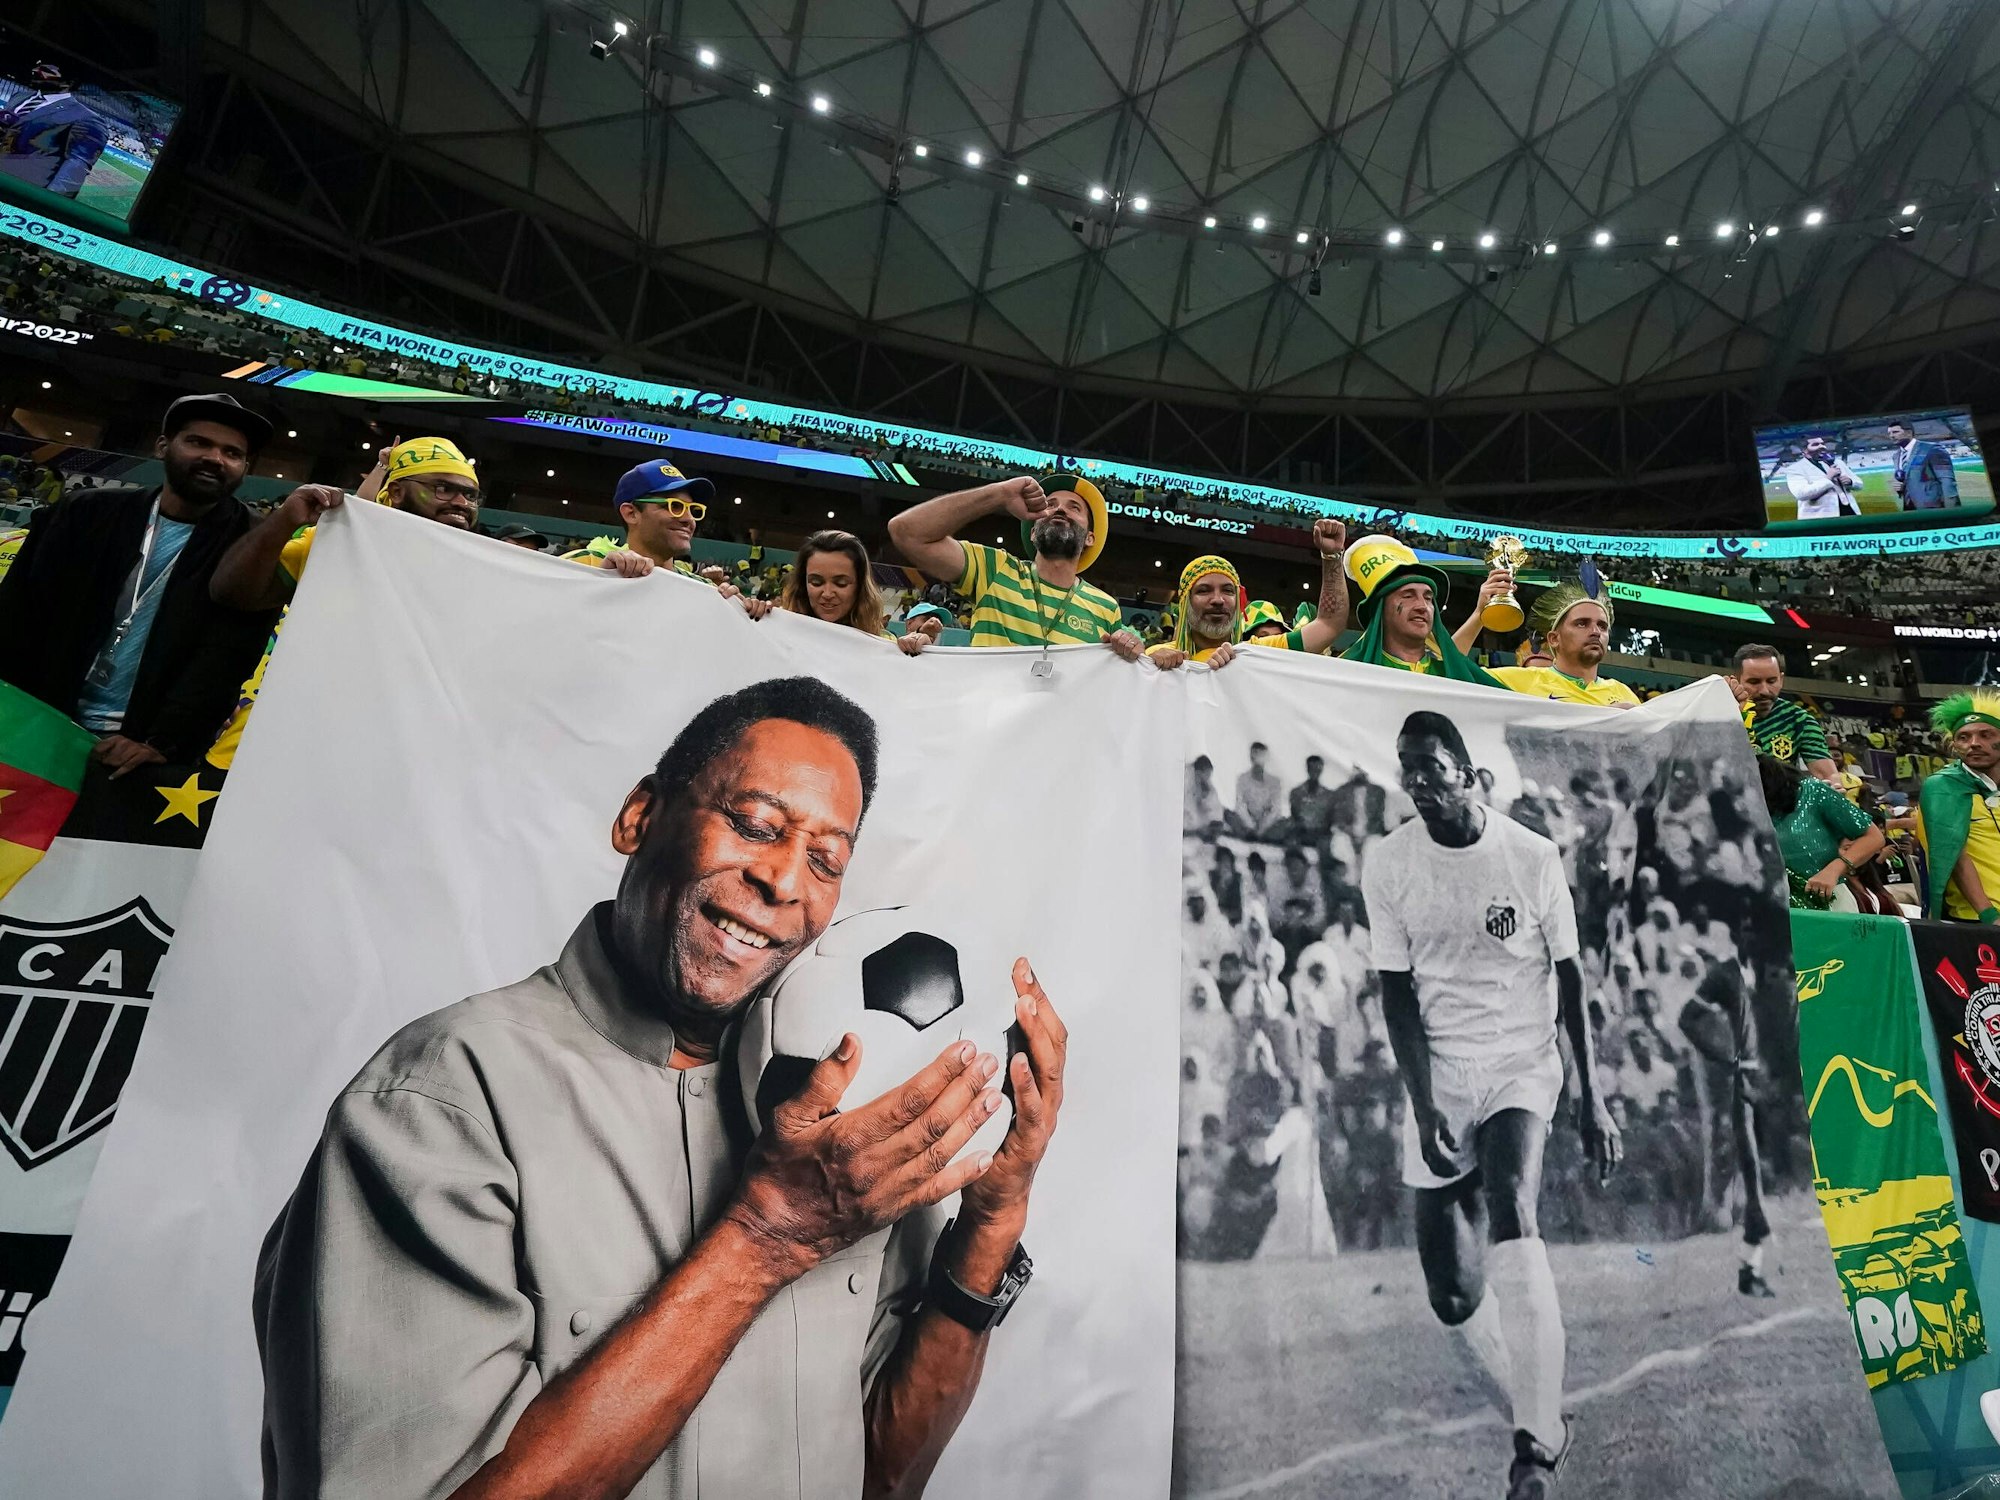 Banner von Pelé hängen bei einem Brasilien-Spiel im Stadion.